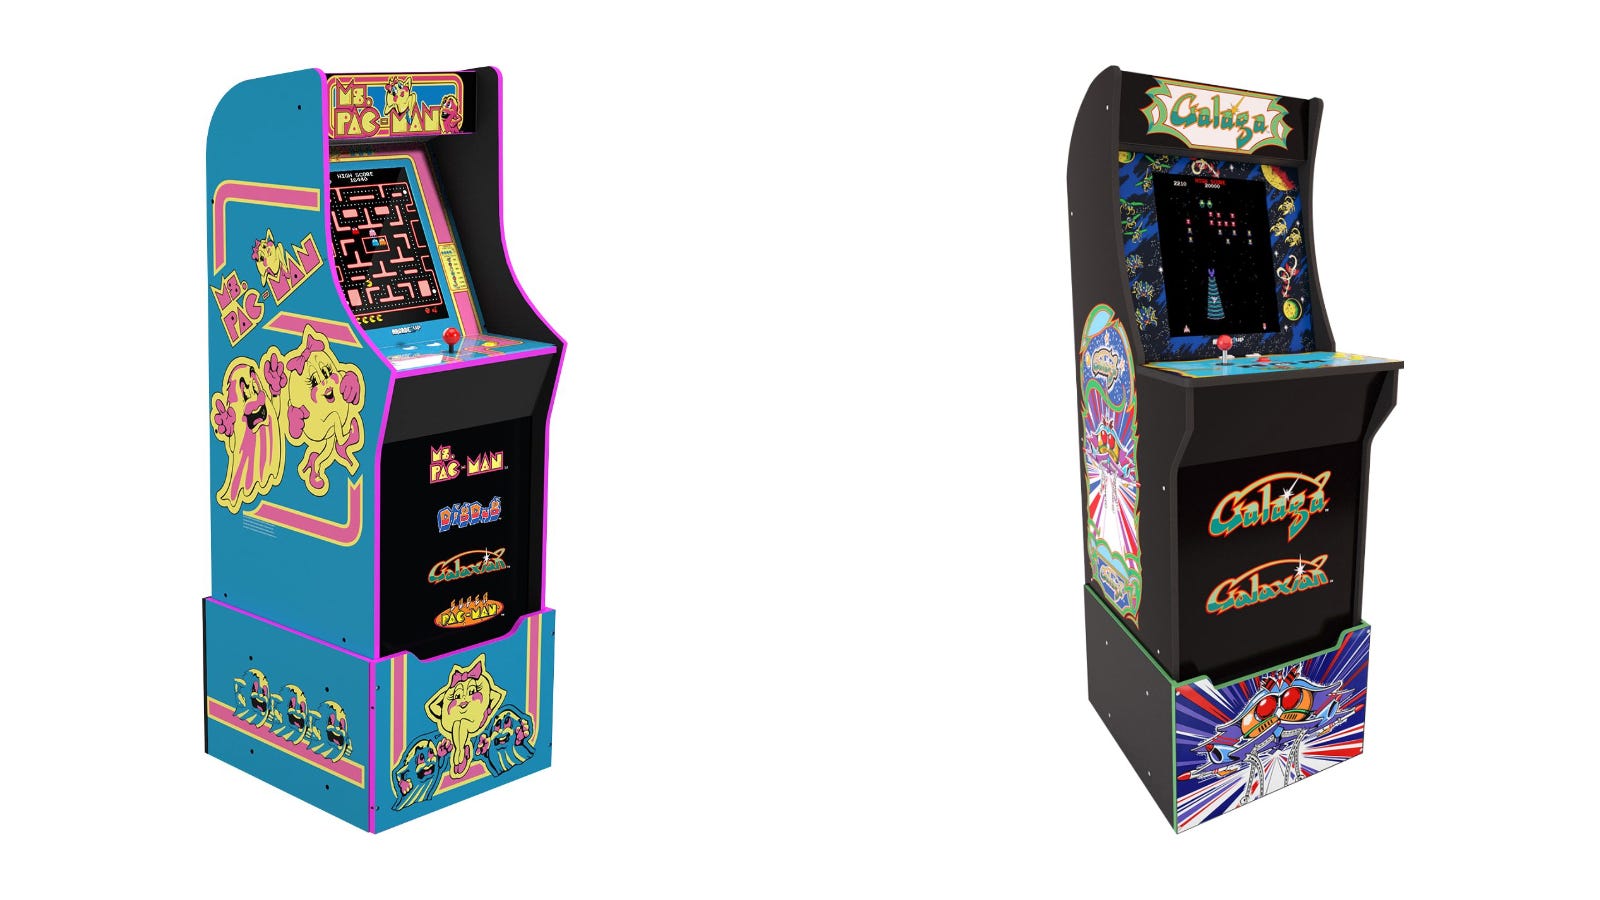 Ms. Pac-Man và Galaga Arcade1Up Cabinets